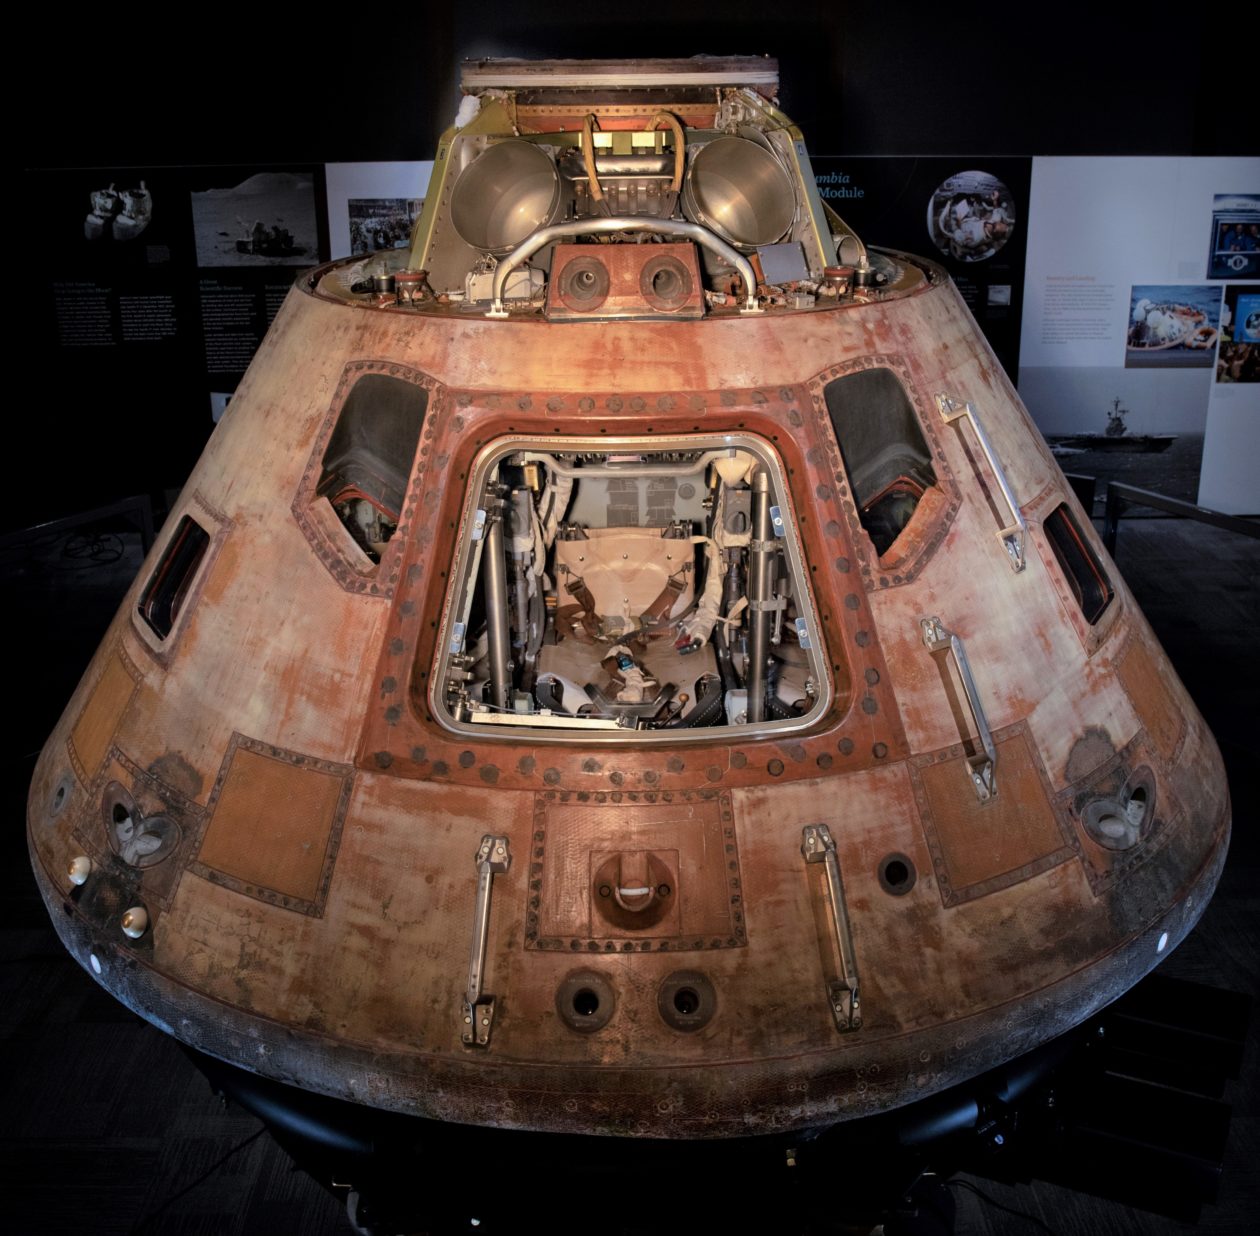 Apollo 11 command module